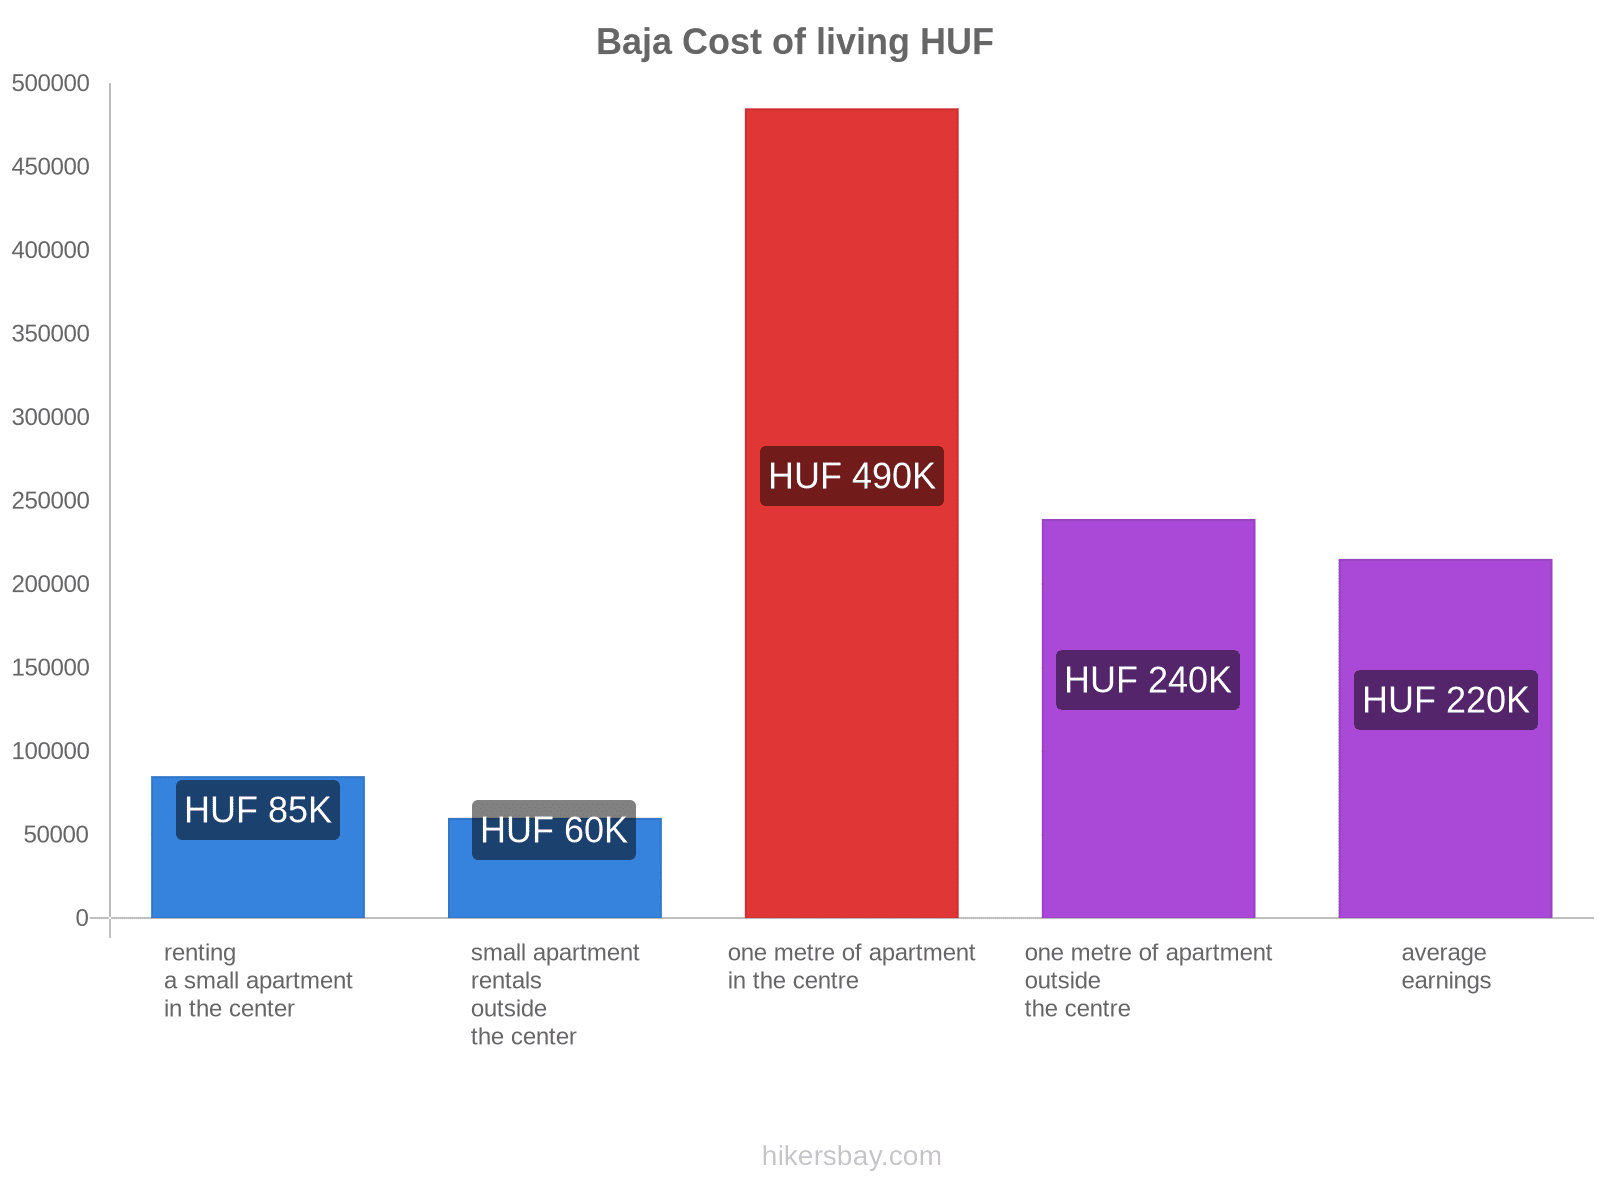 Baja cost of living hikersbay.com